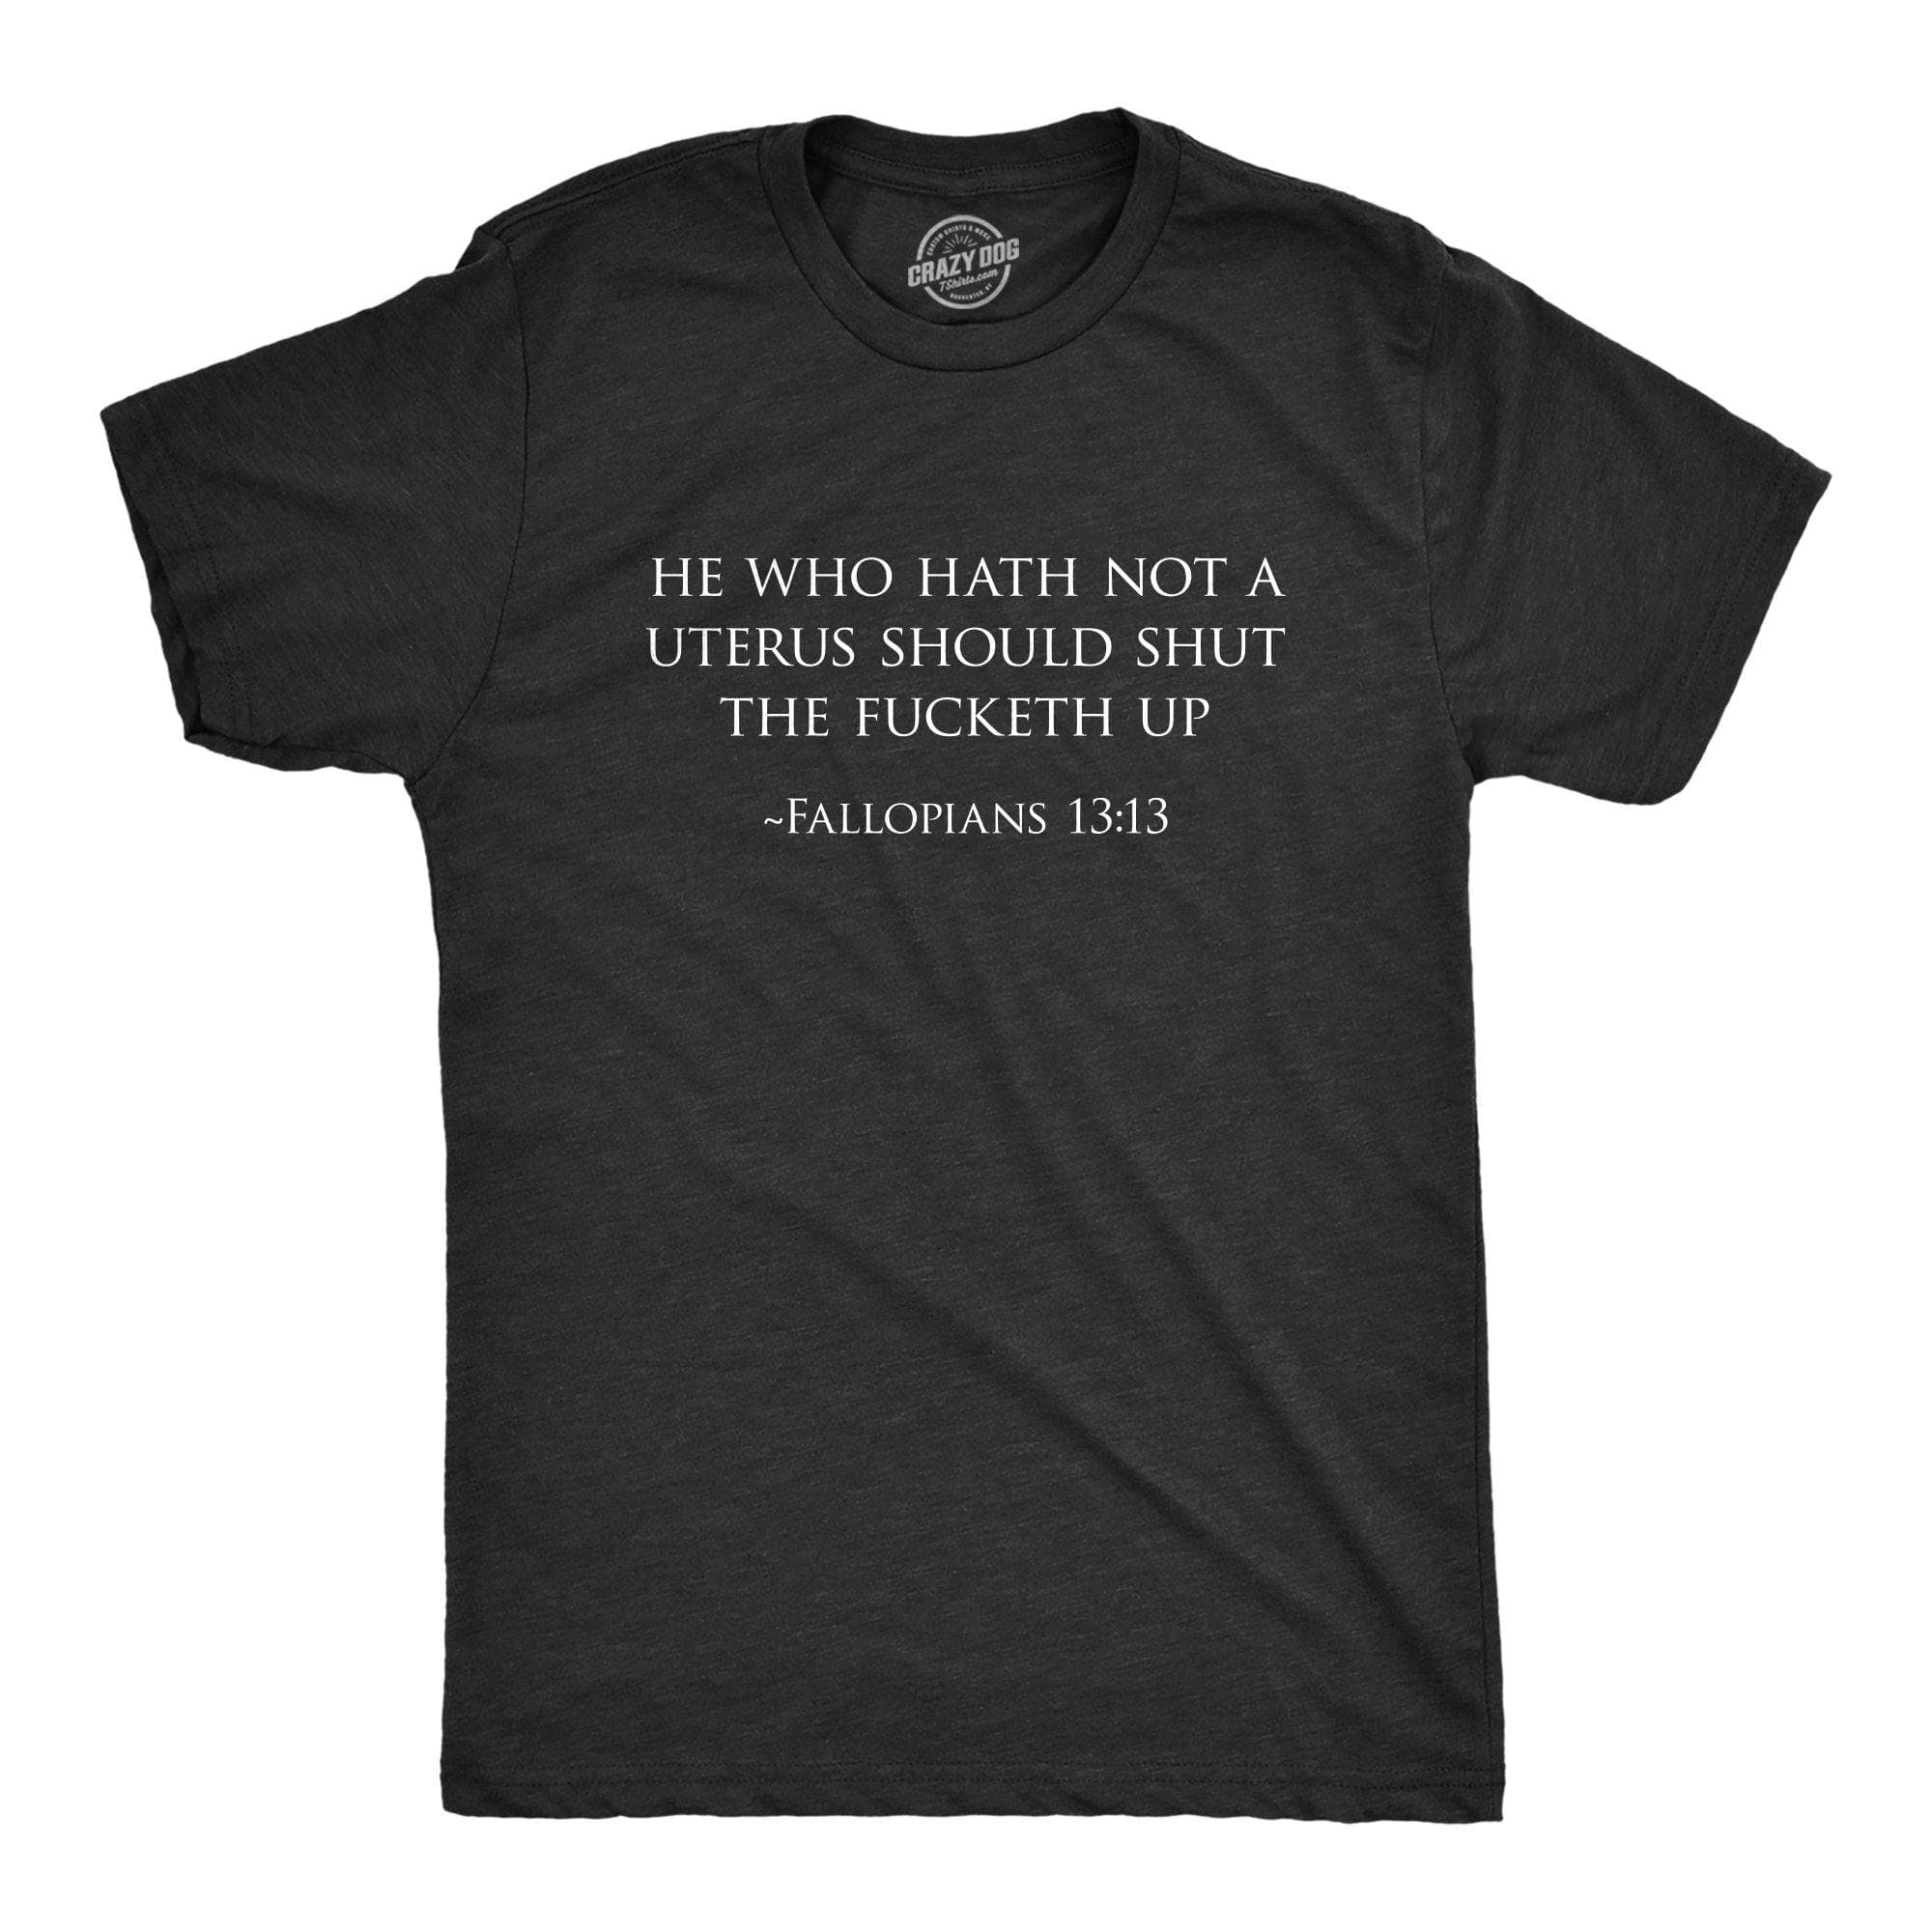 Fallopians 13:13 Men's Tshirt - Crazy Dog T-Shirts